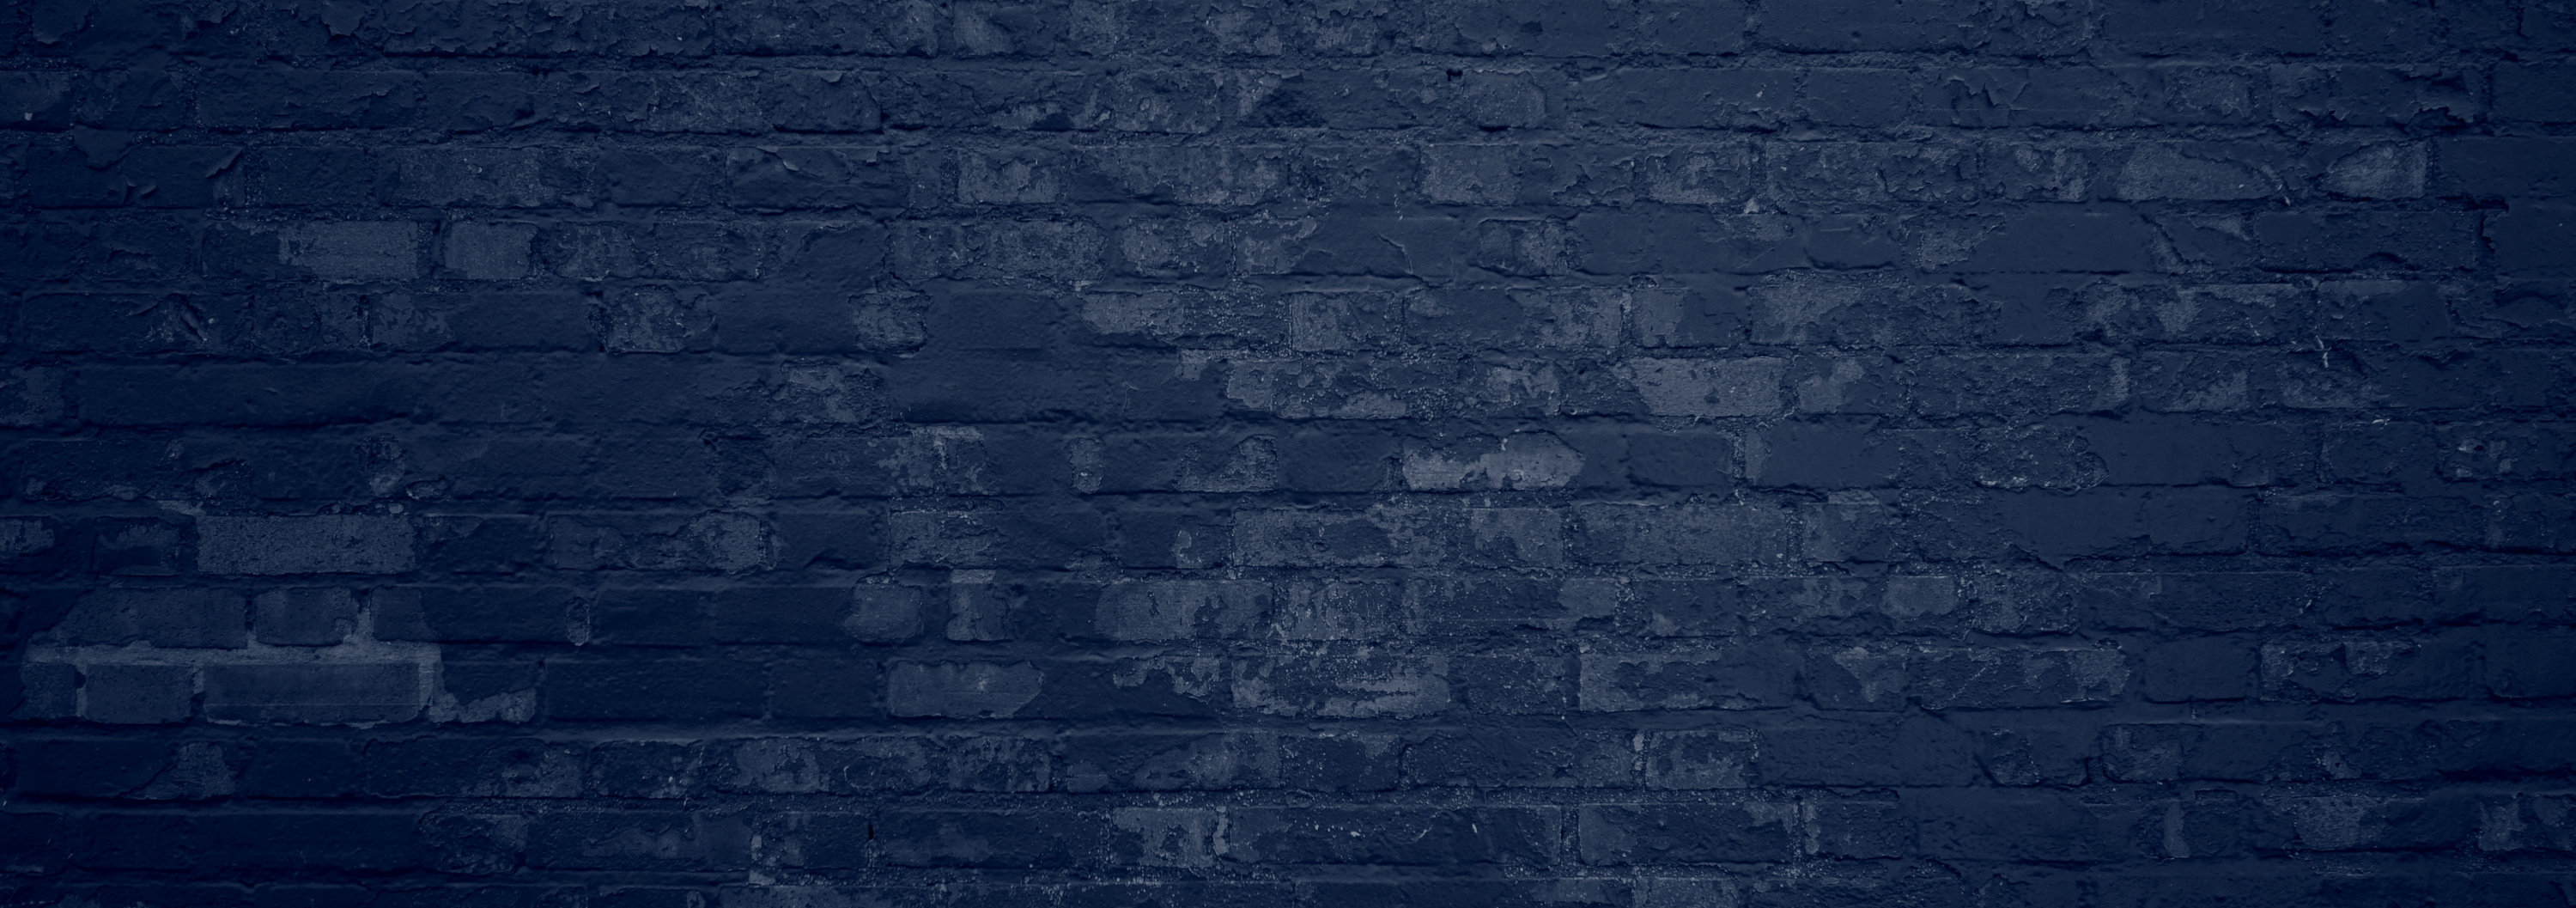 Dark blue brick wall background